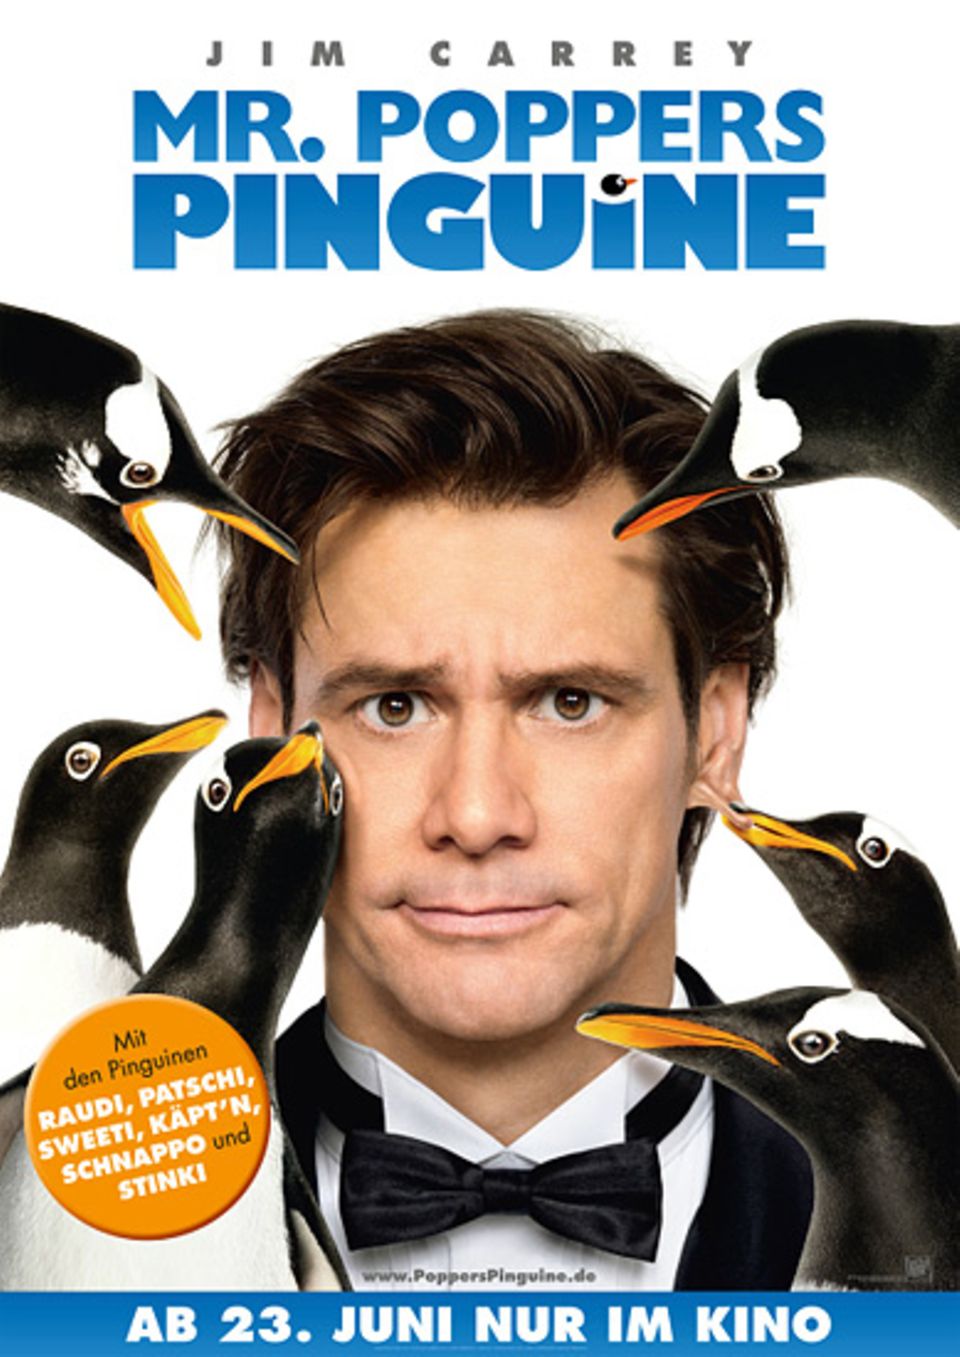 Das offizielle Filmplakat zu "Mr. Poppers Pinguine"